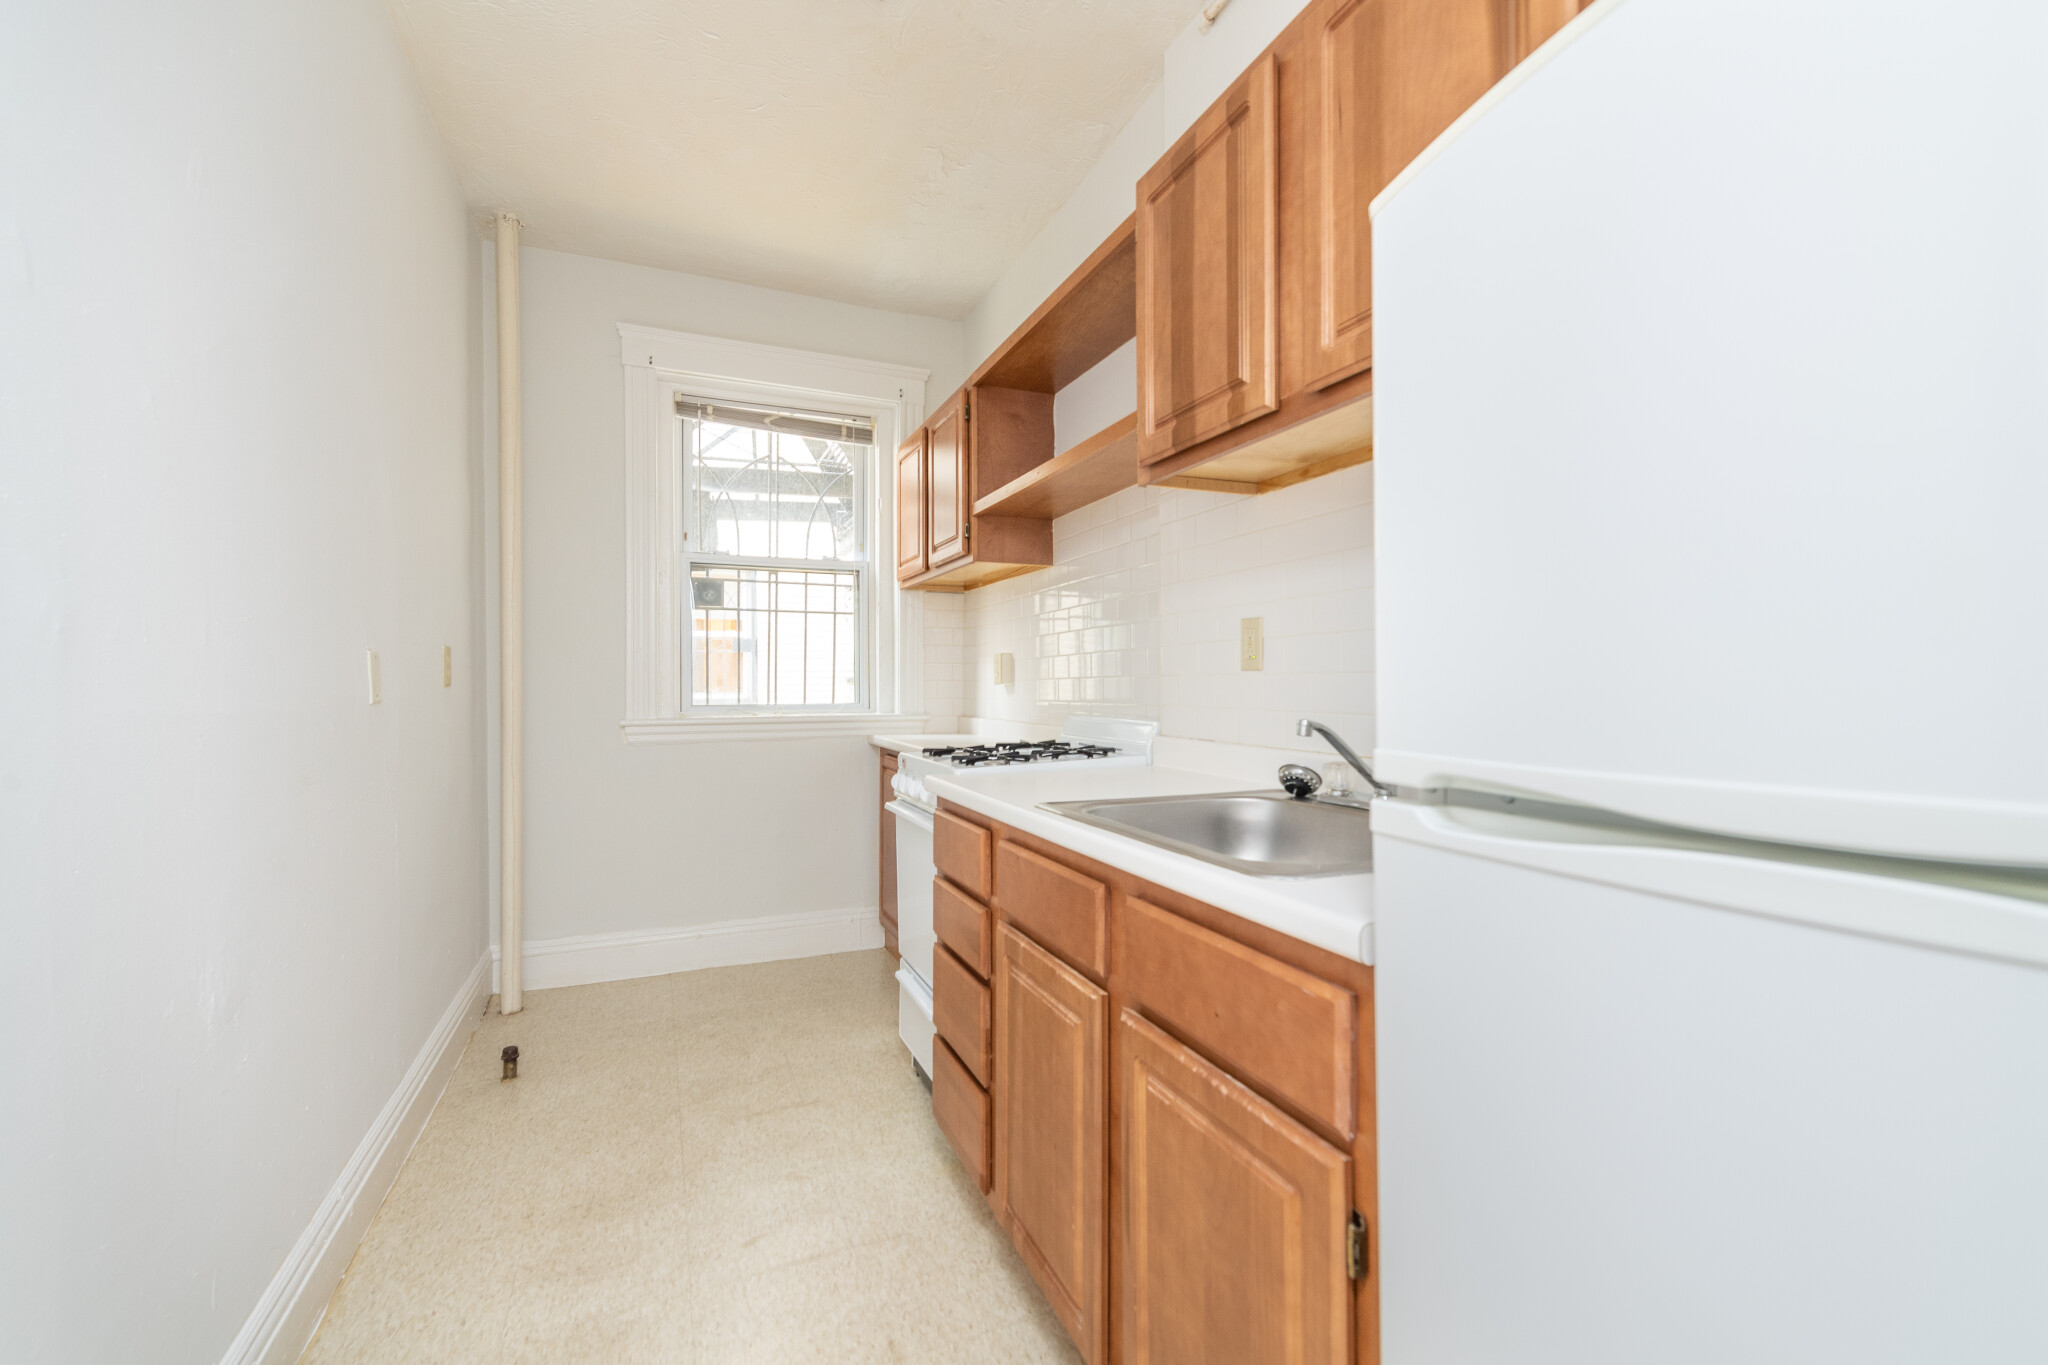 Photos of apartment on Worthington St.,Boston MA 02120